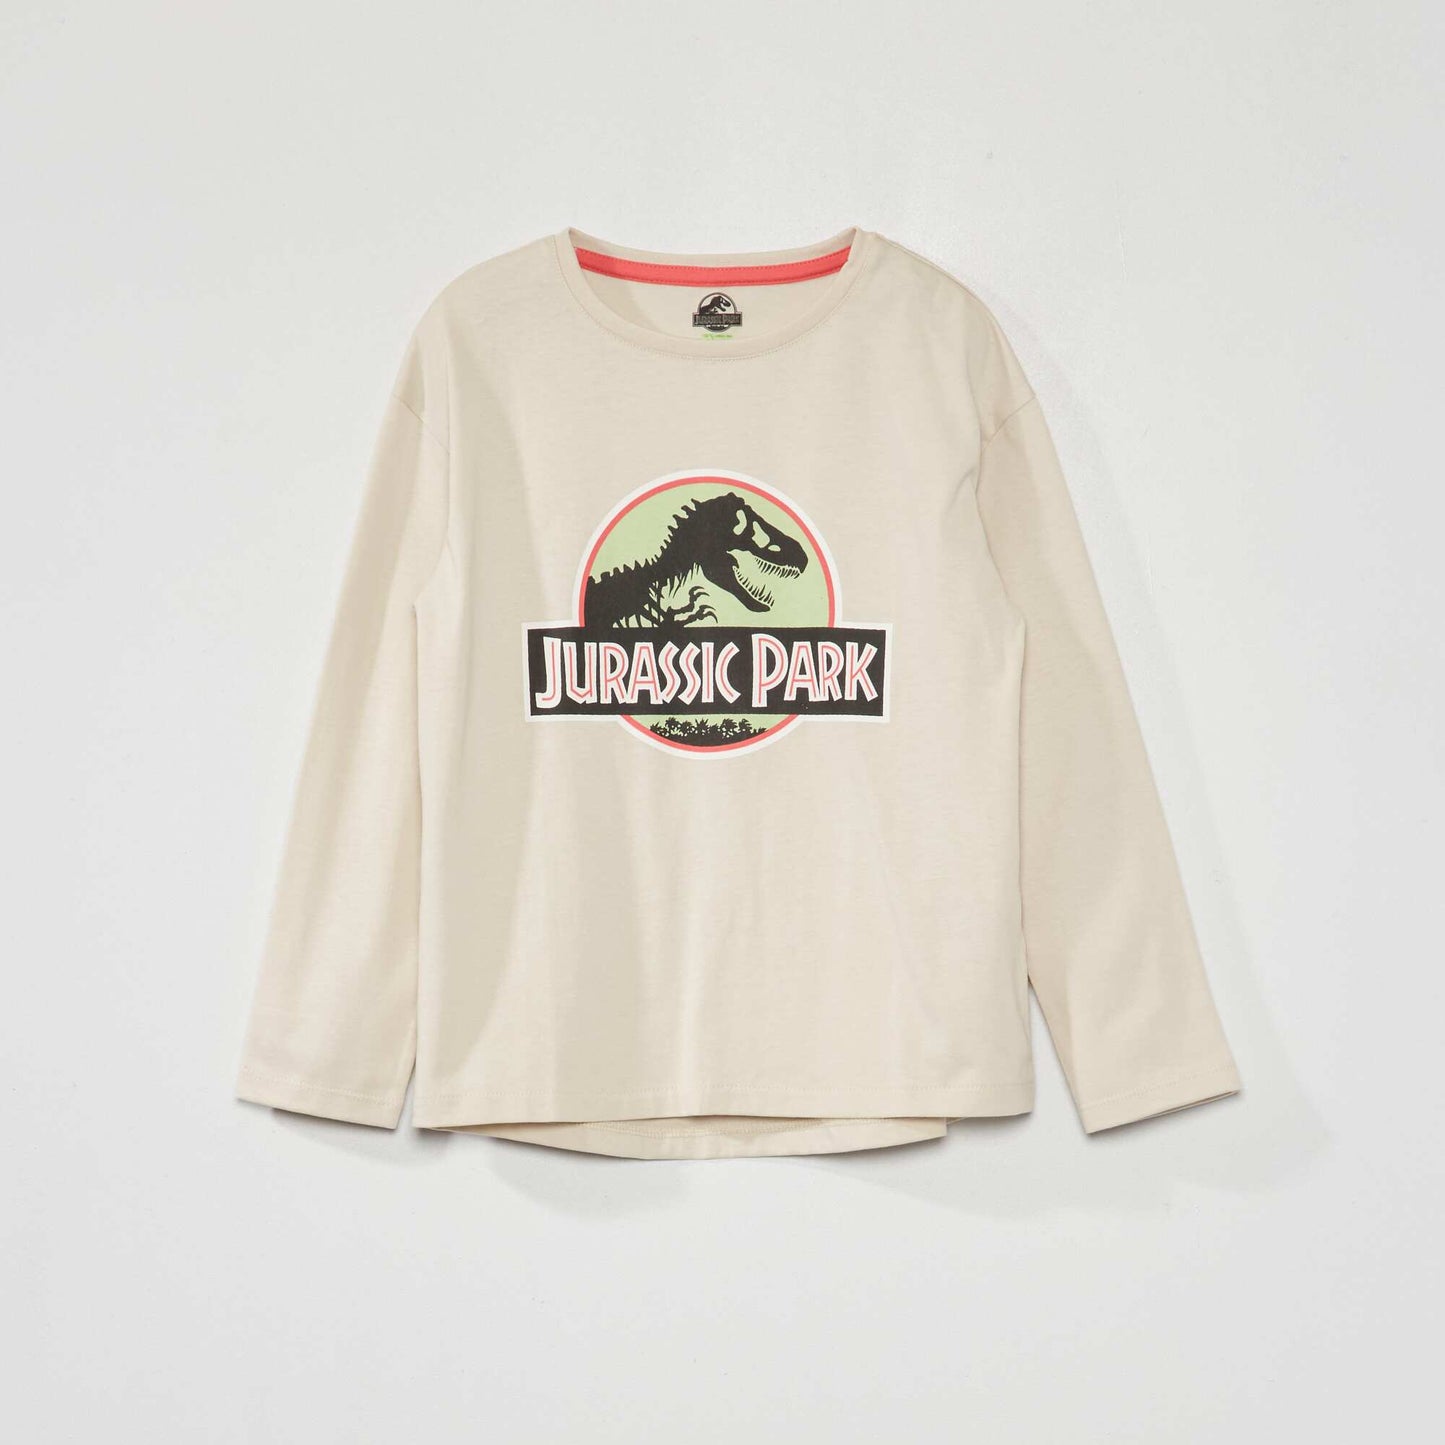 'Jurassic Park' long-sleeved T-shirt ecru